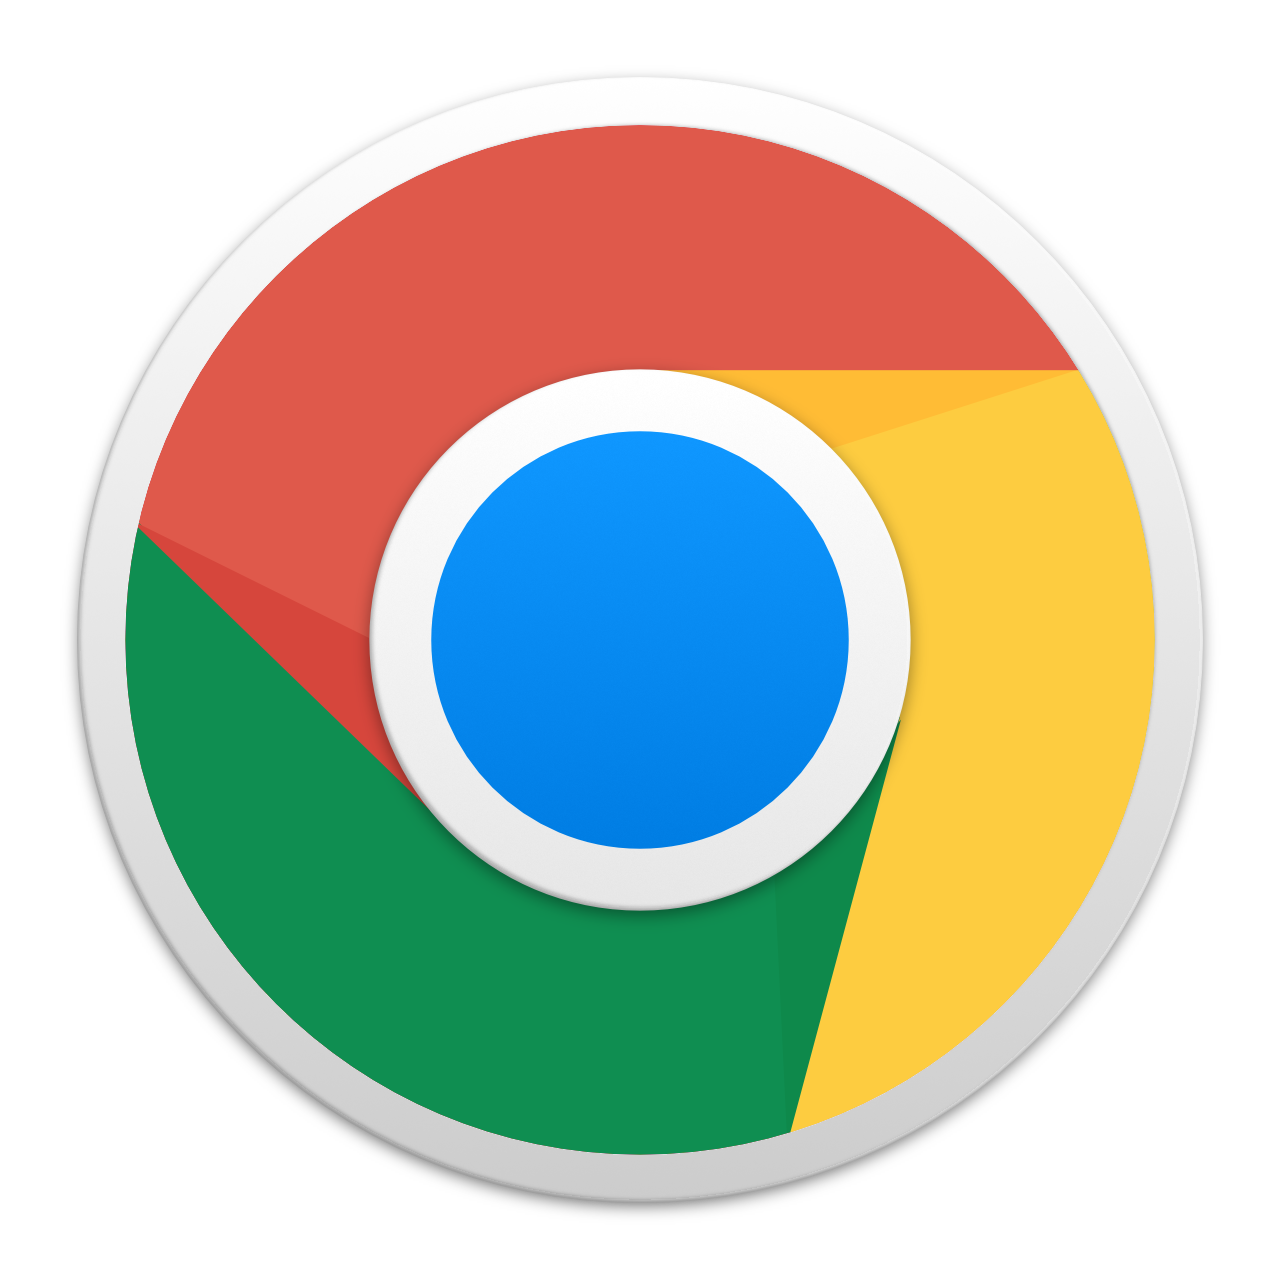 Logotipo do Google Chrome